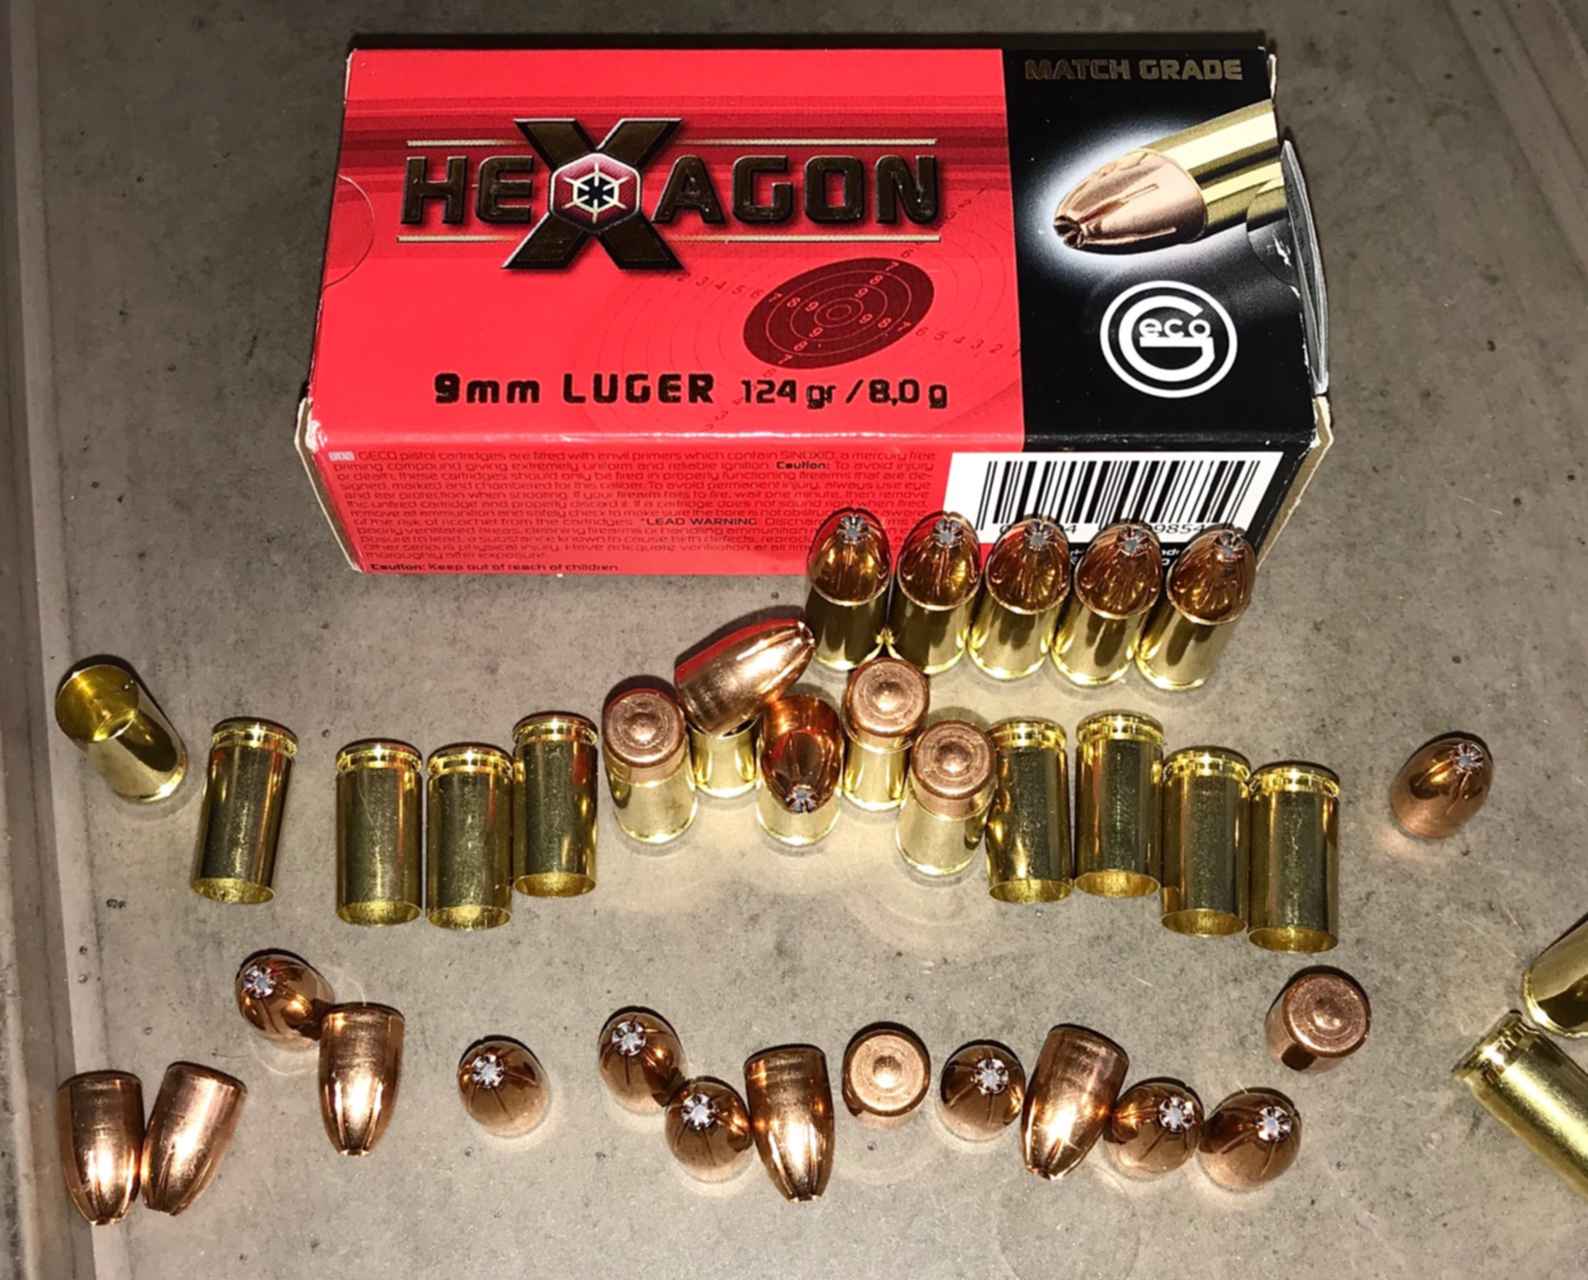 HEXAGON 9mm Luger (.355") 124gr/8,0г немецкой фирмы Geco. 